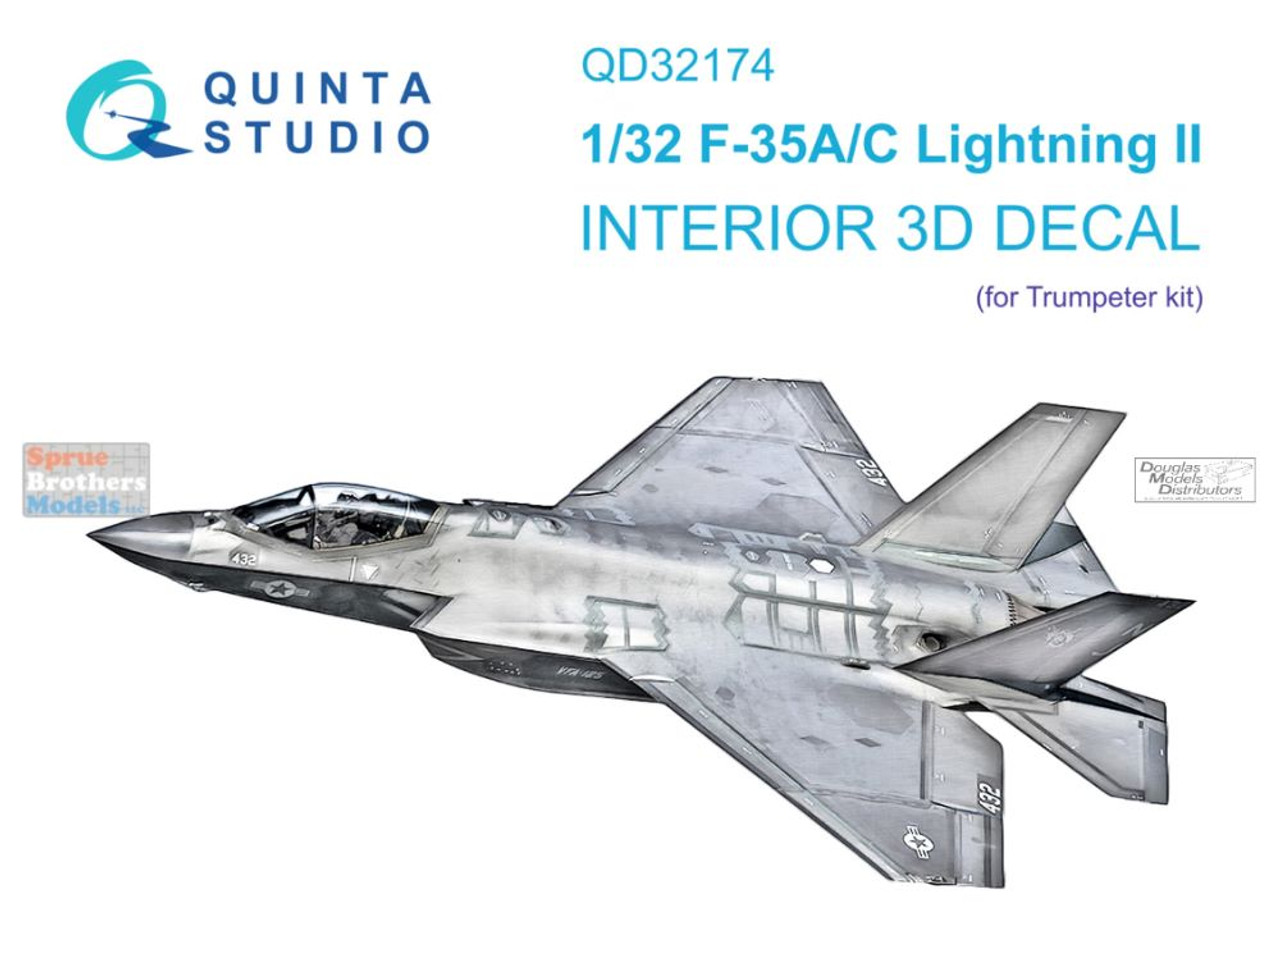 QTSQD32174 1:32 Quinta Studio Interior 3D Decal - F-35A F-35C Lightning II  (TRP kit)